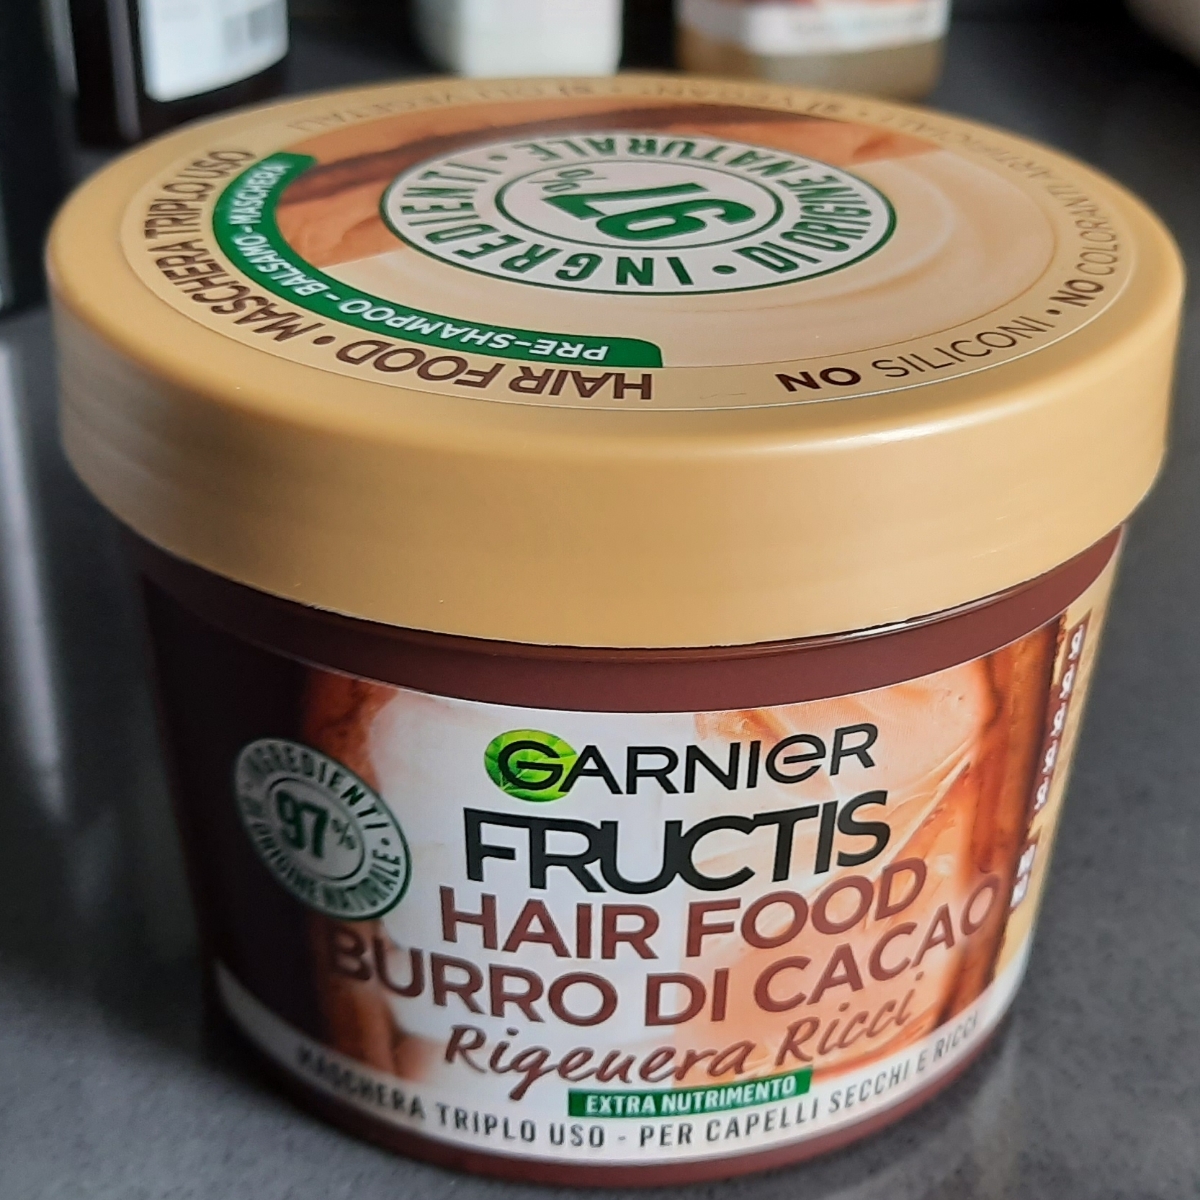 Garnier 3 in 1 hair food burro di cacao Review | abillion